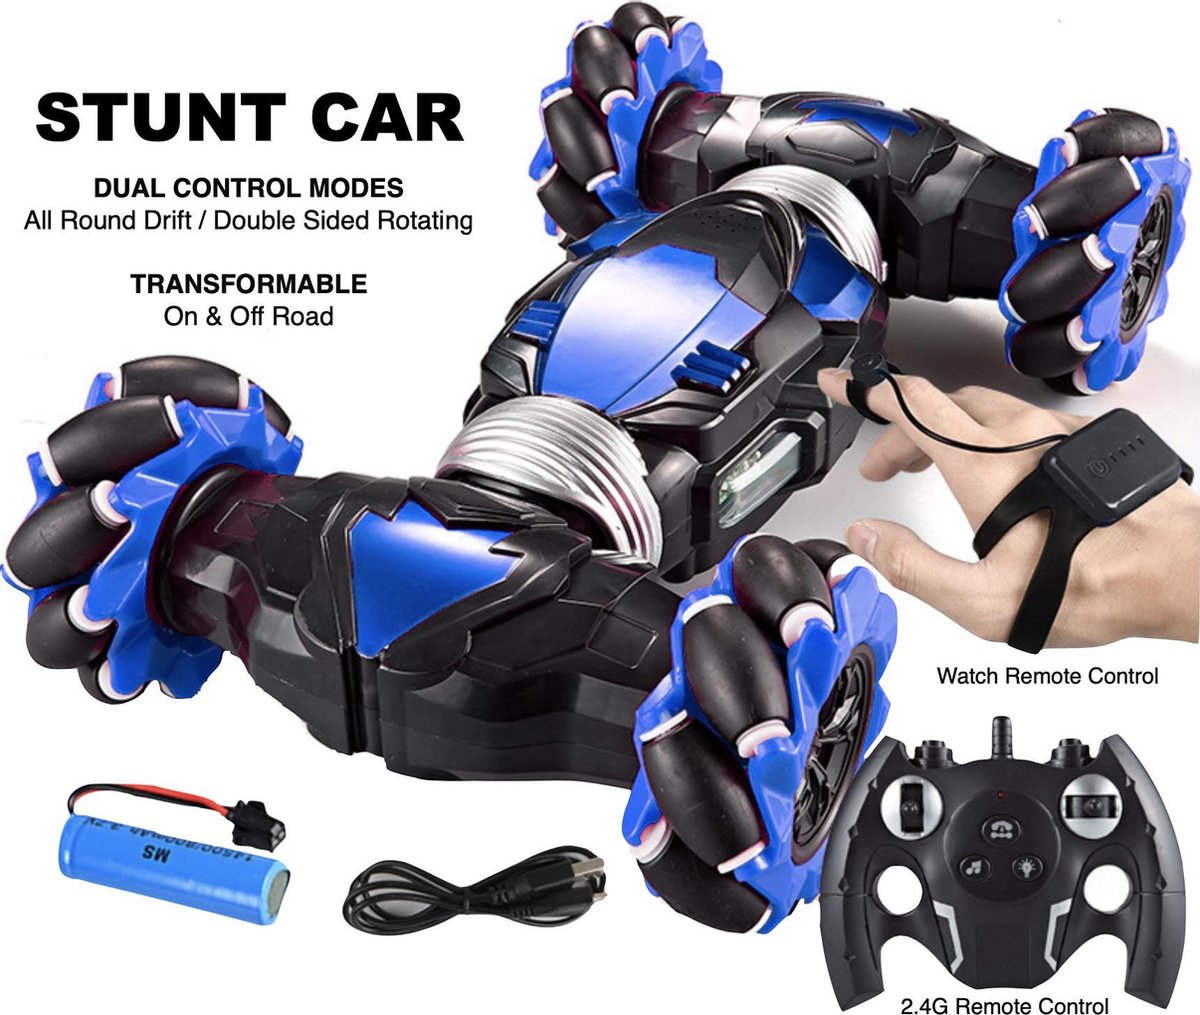 Opération gestuelle Rc Stunt Car pour enfants, 4 roues motrices